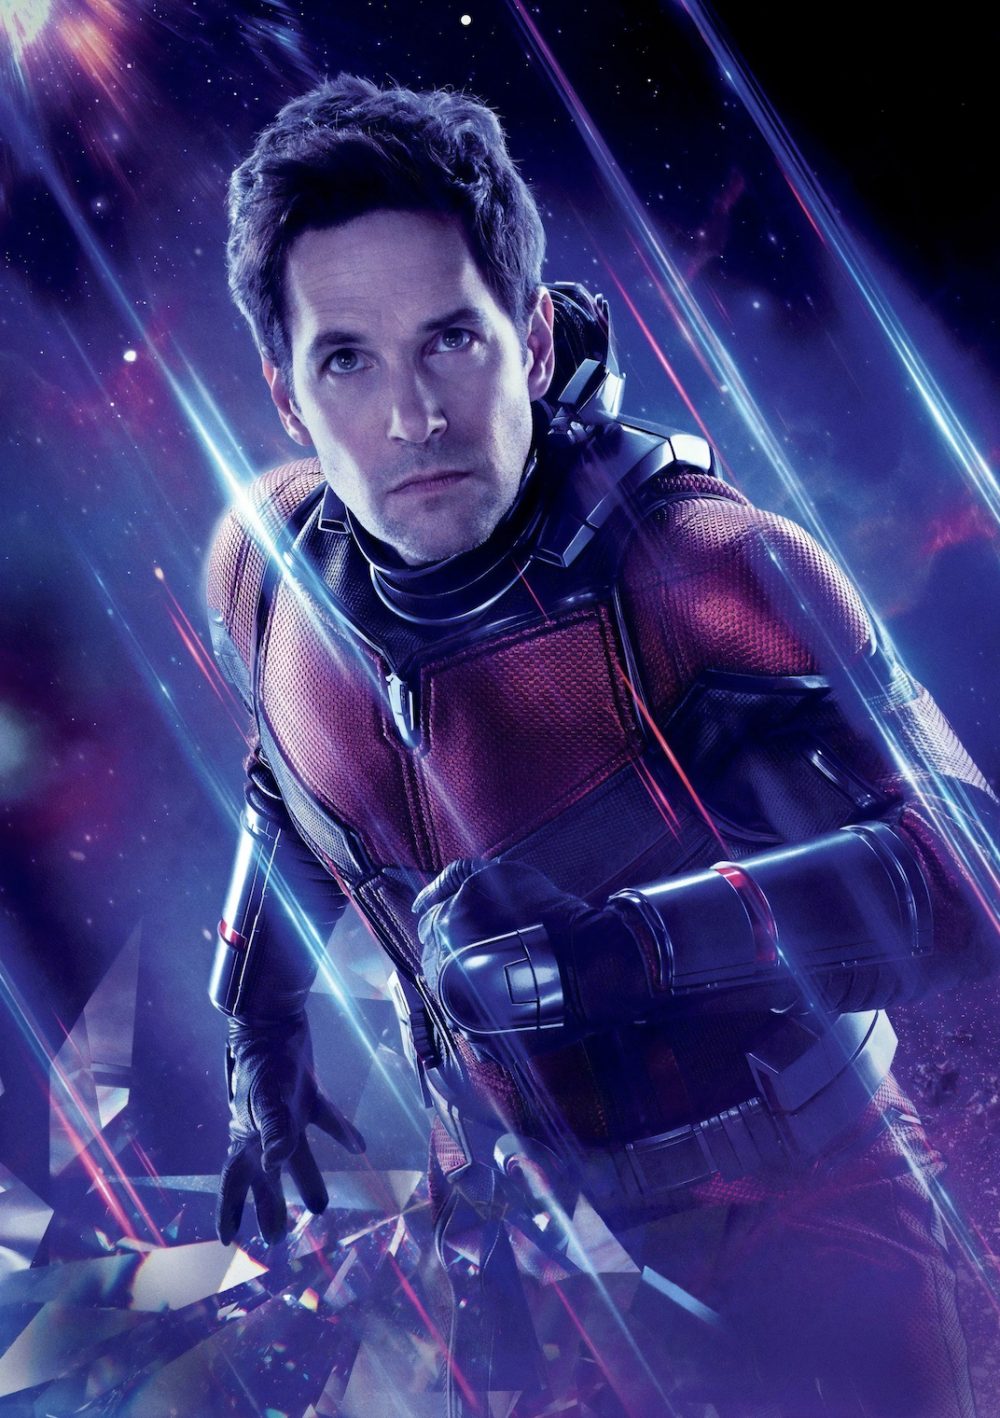 Tên các siêu anh hùng trong Avenger: Scott Lang (Ant-Man - Người Kiến)